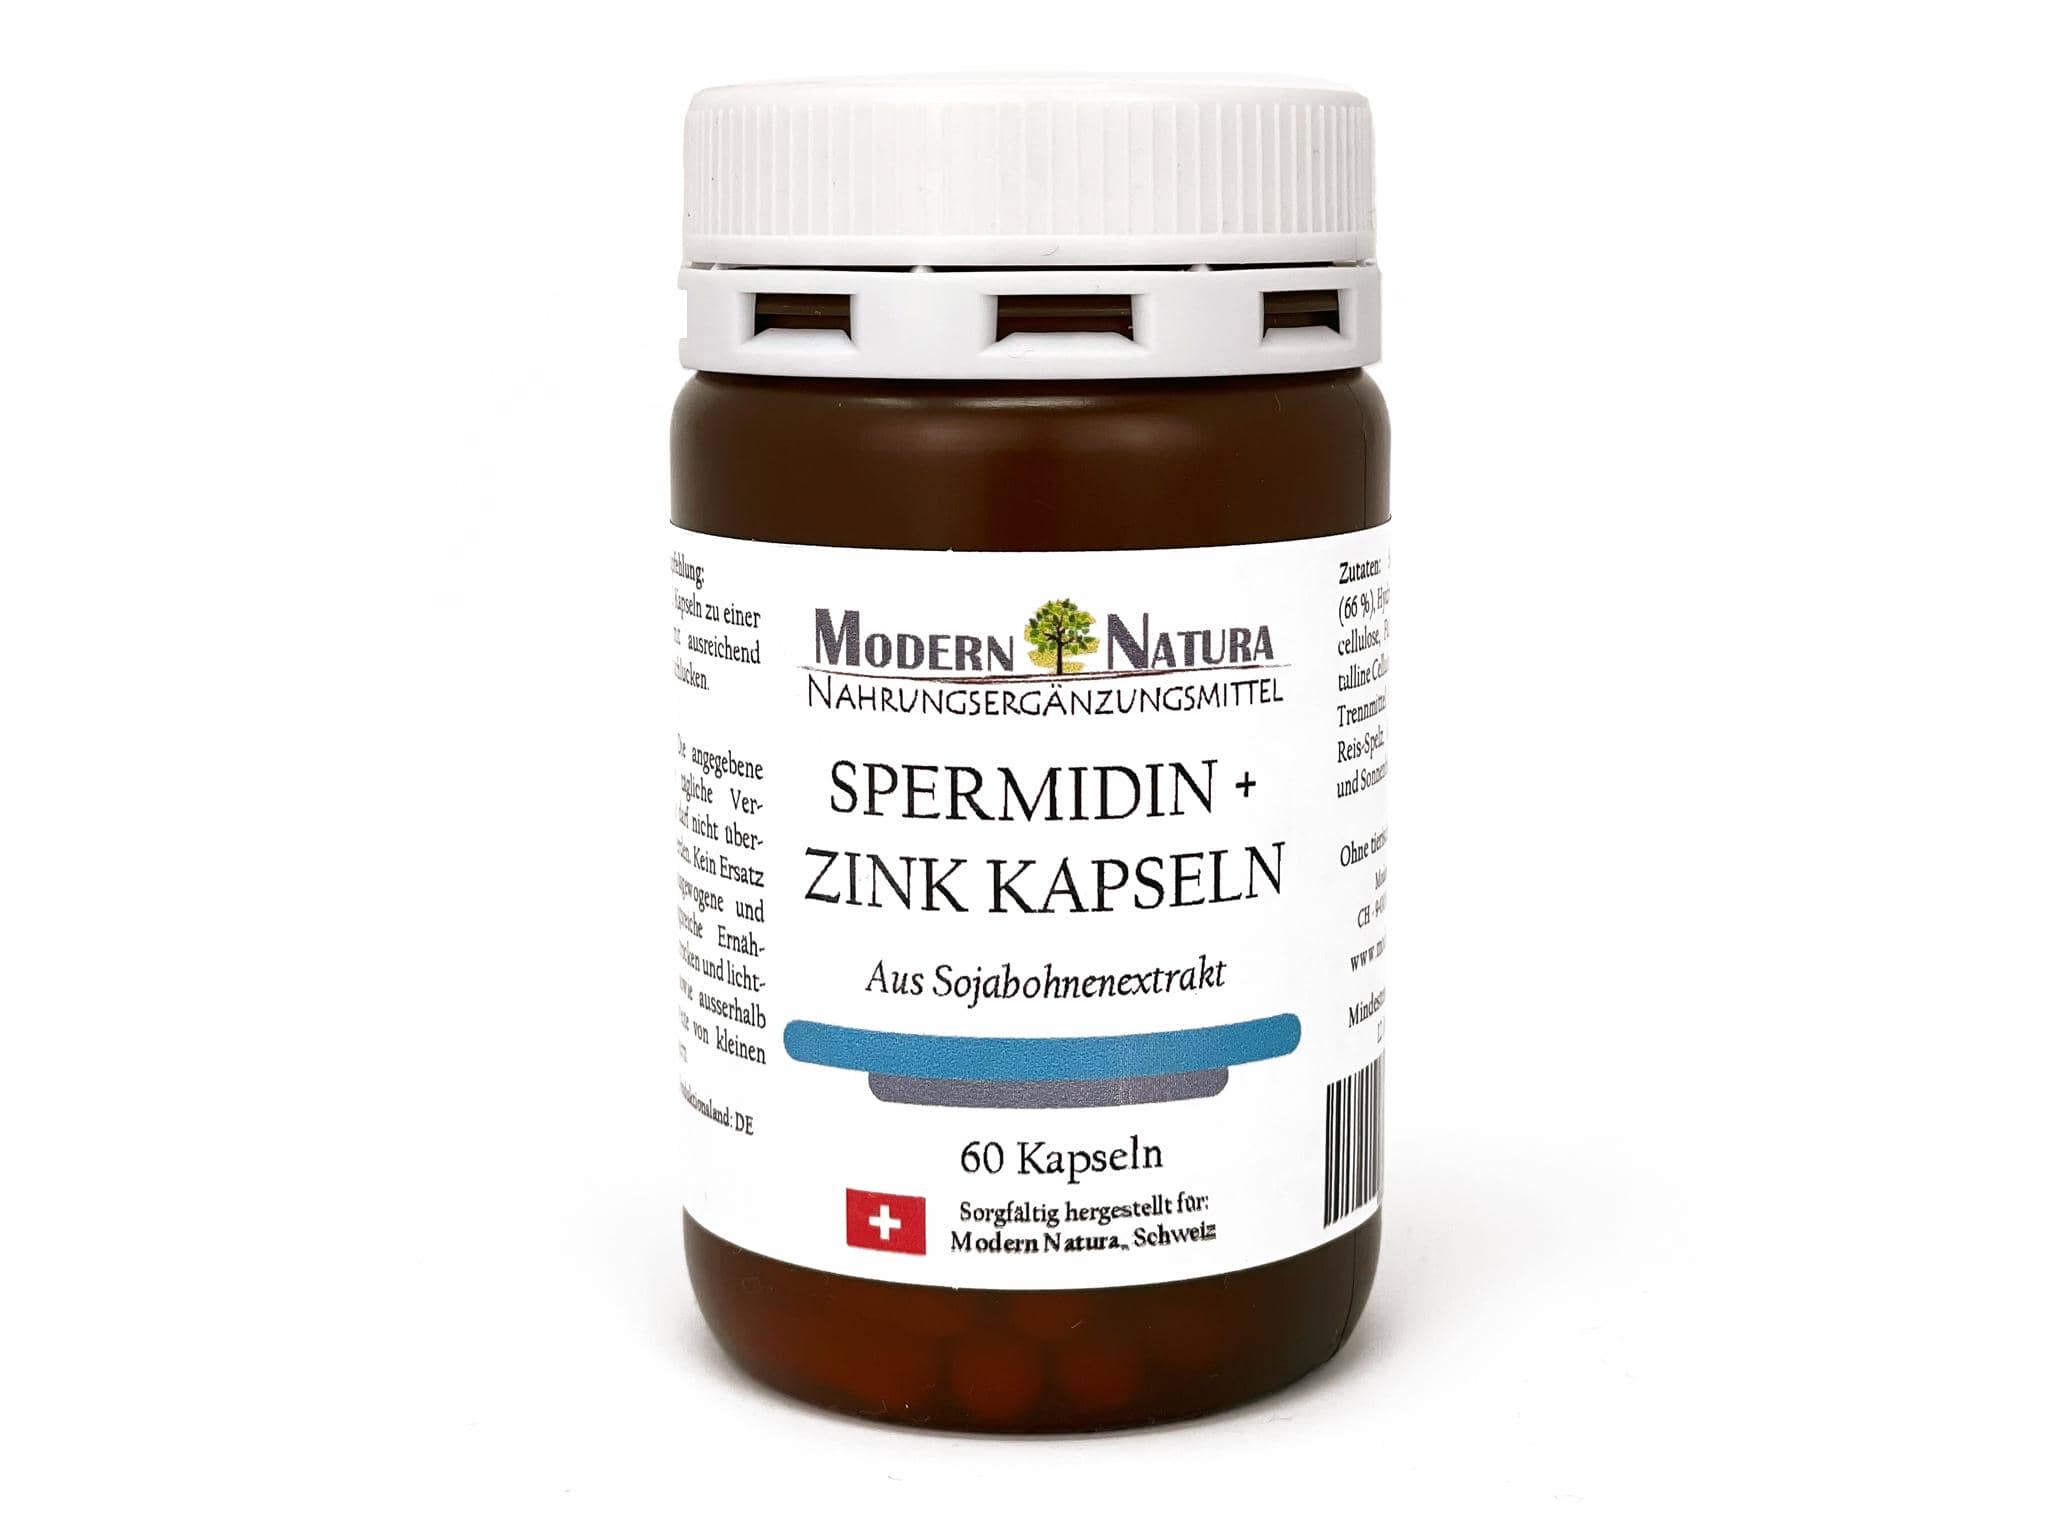 Spermidin + Zink 60 Kapseln - Aus Sojabohnenextrakt - Ausreichend für 1 Monat - Monoaminopropylputrescin